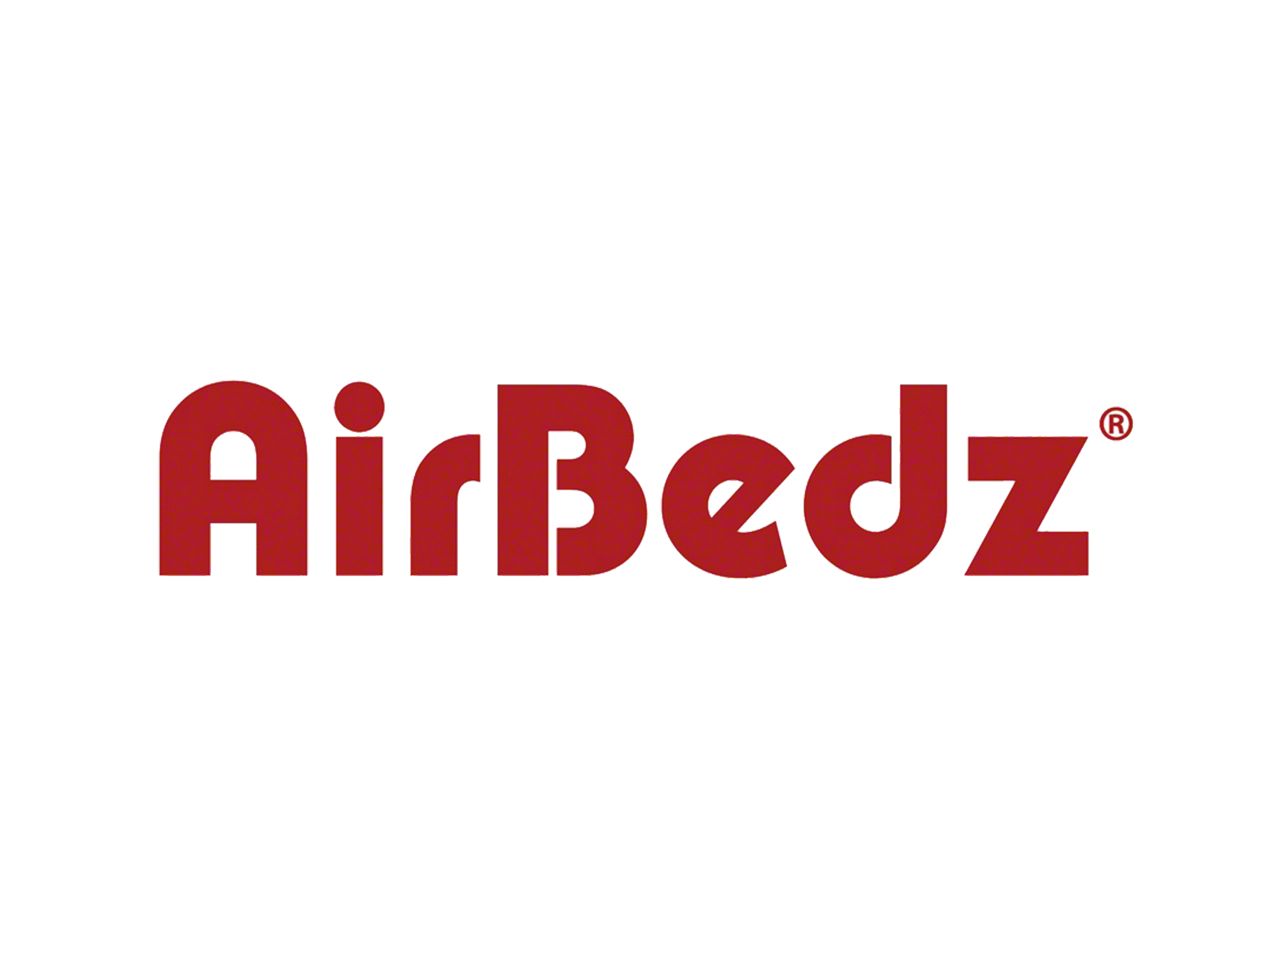 AirBedz Parts